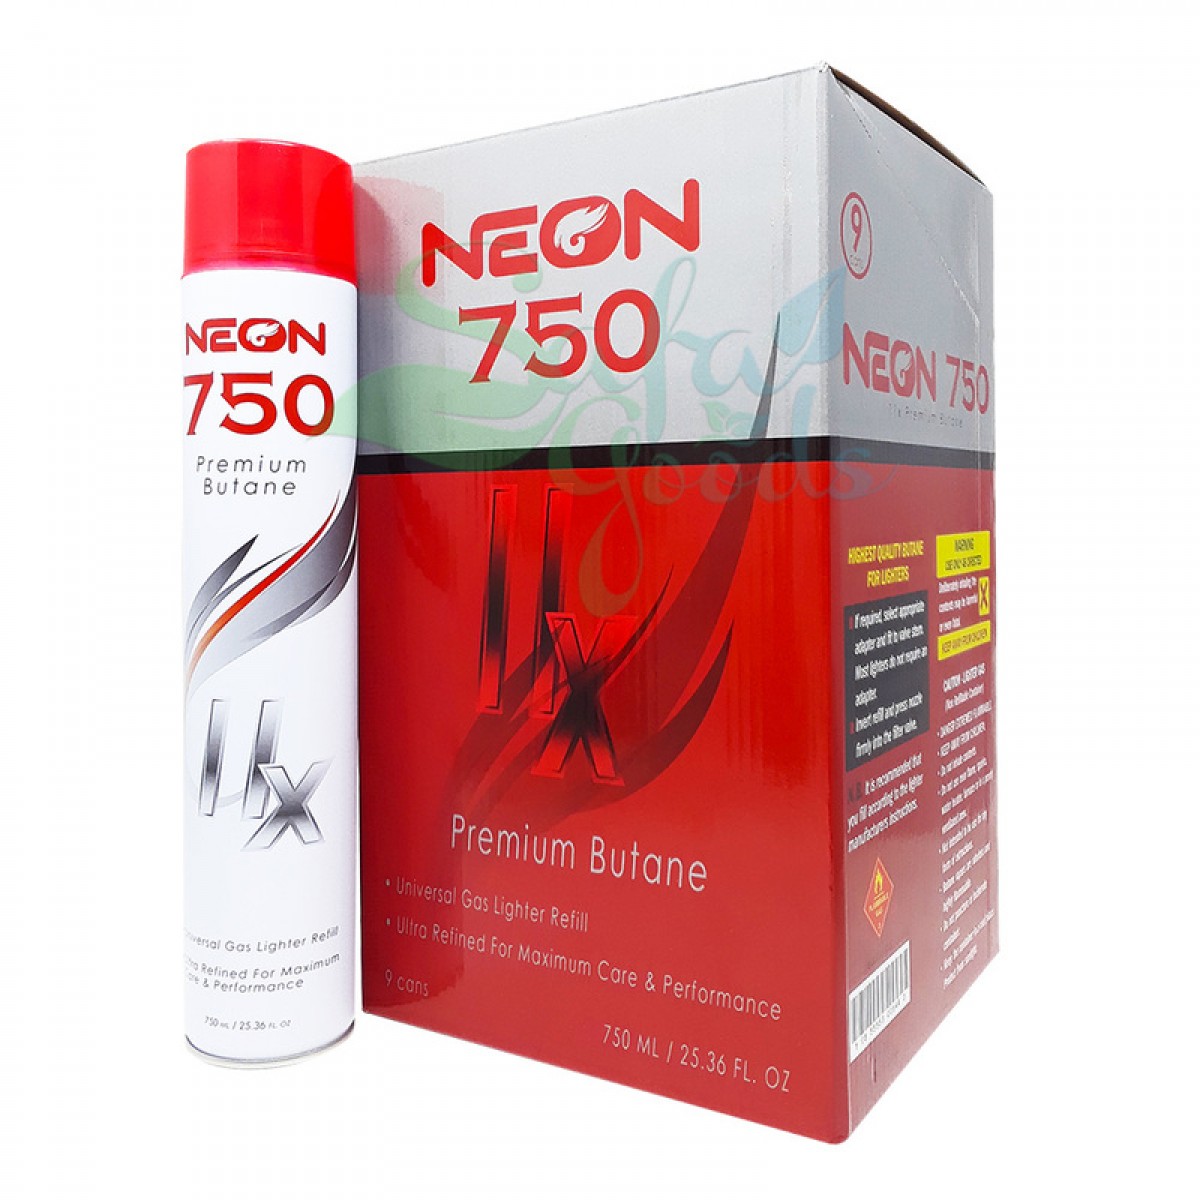 Neon 750 Premium Butane | 11x Ultra Refined 9PC Case